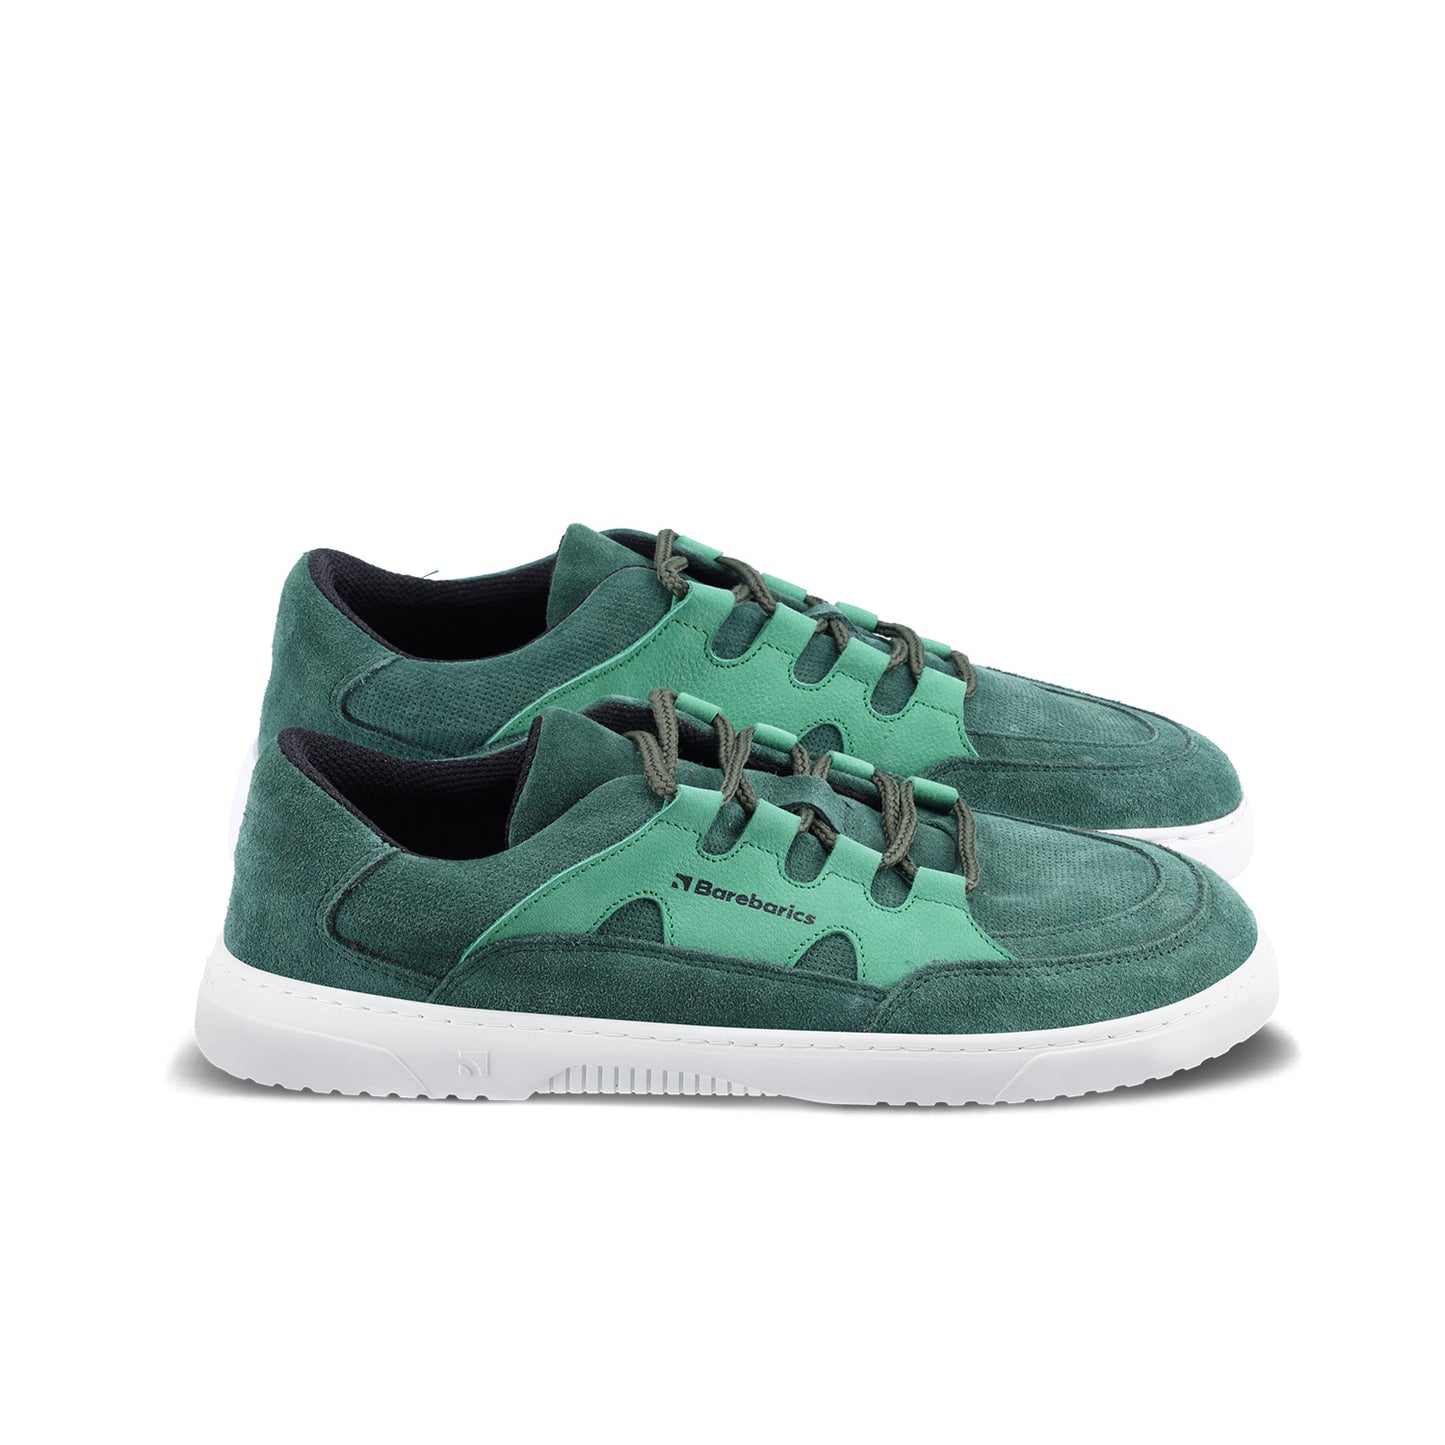 Barebarics Evo Barefoot Sneakers - Dark Green & White